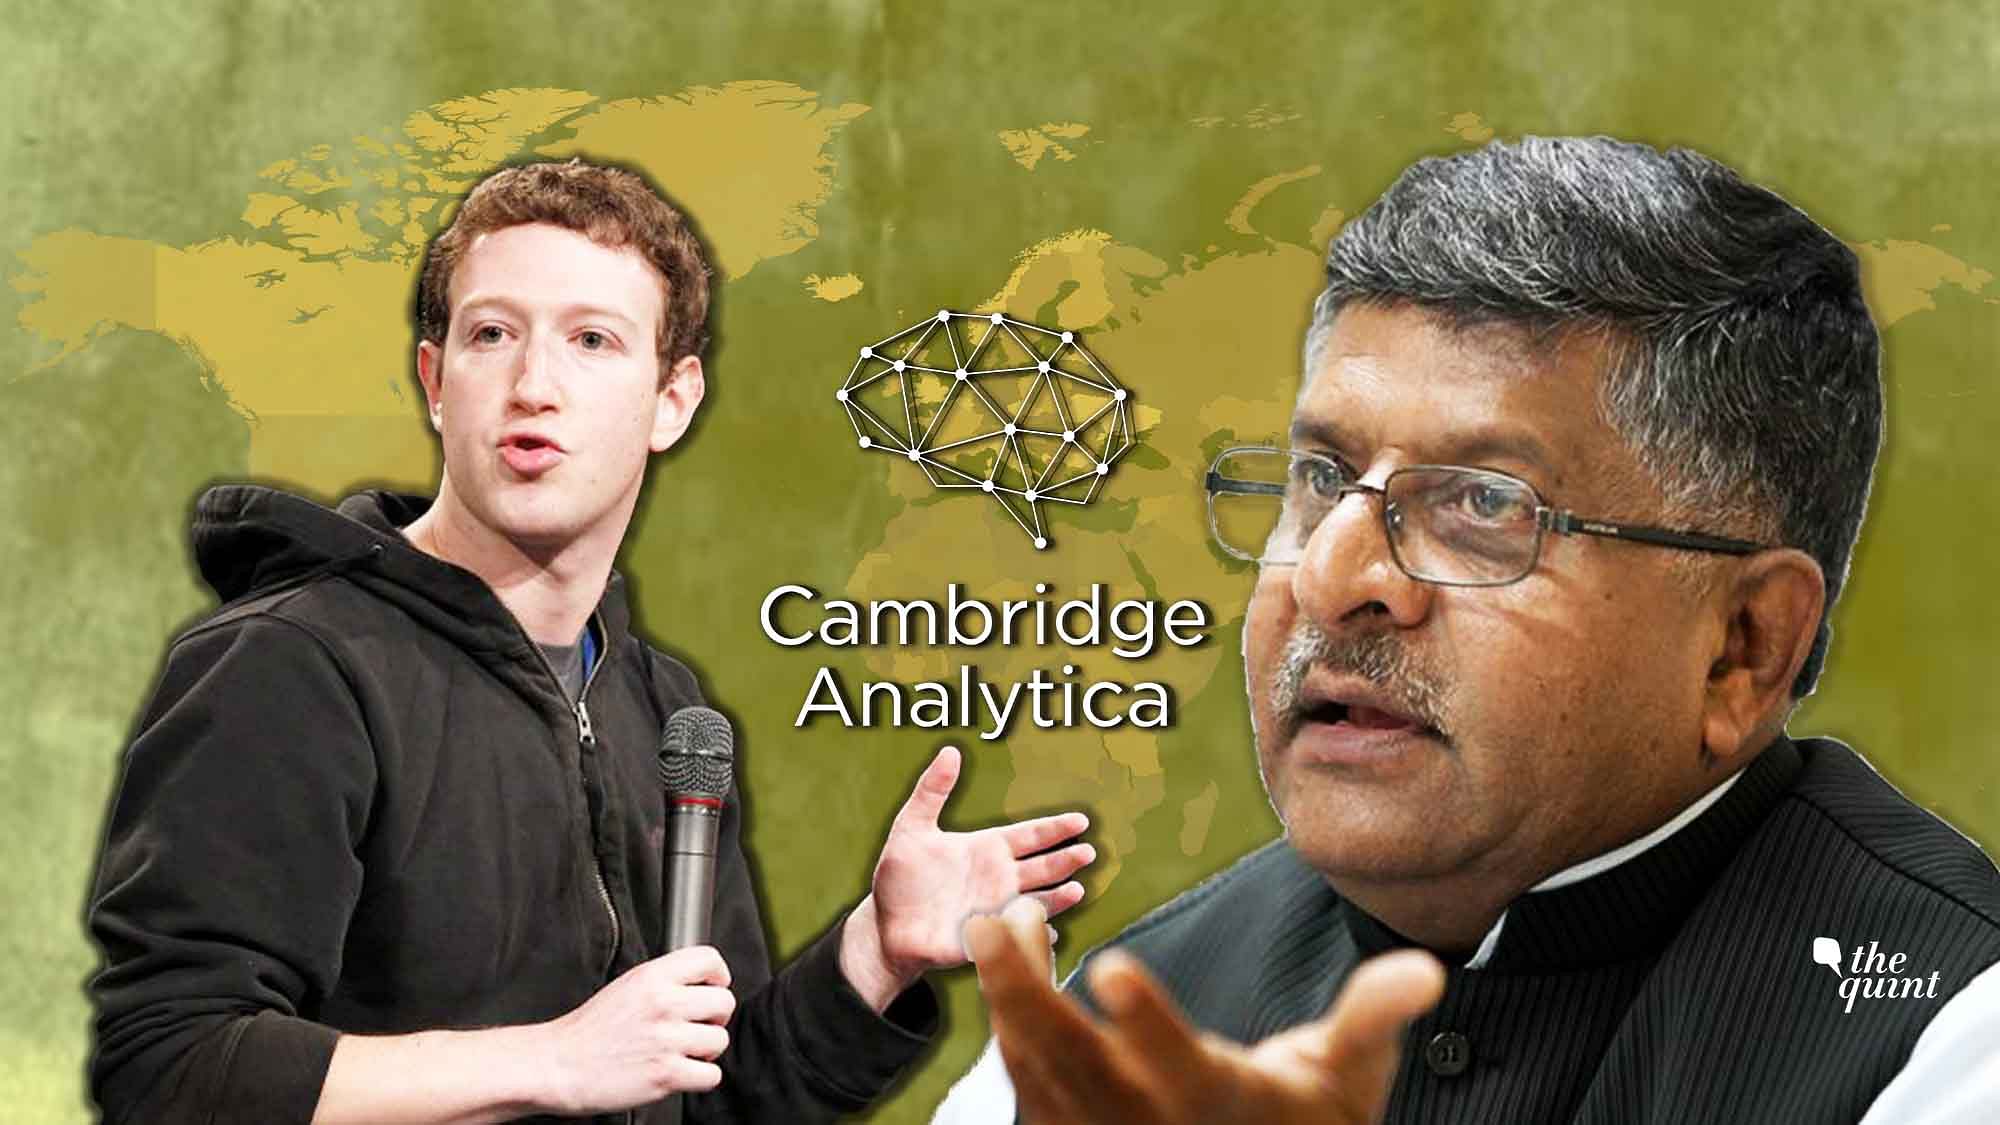 Facebook has suspended Cambridge Analytica over policy violation.&nbsp;